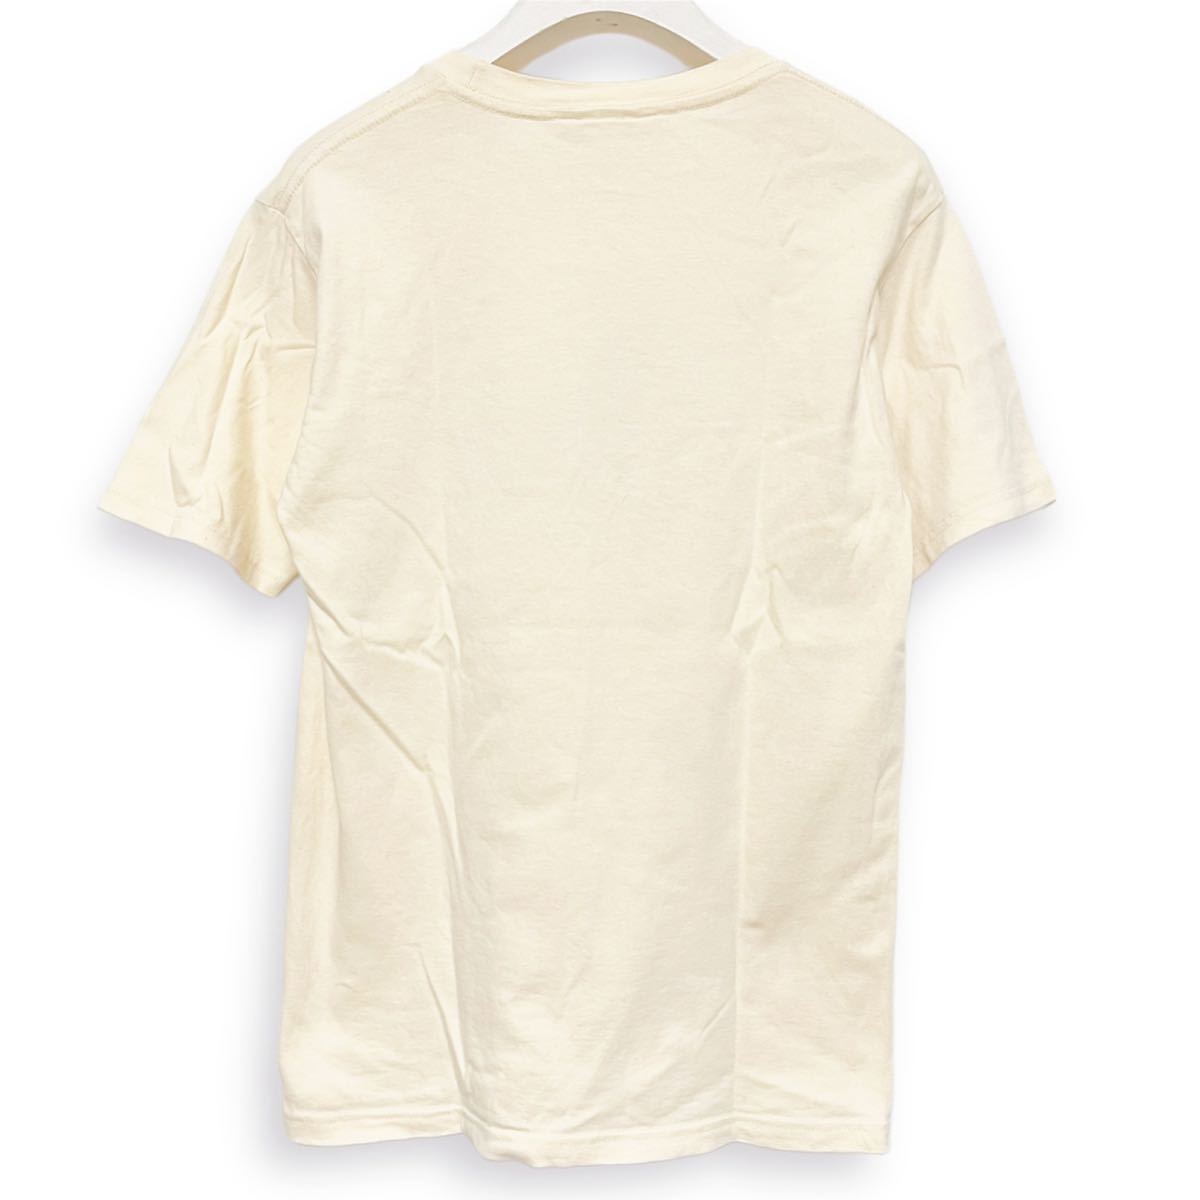 LEFT ALONE レフトアローン Tシャツ カットソー トップス 象ゾウ 掃除機 刺繍 S 半袖 キャラクター 薄黄色イエロー系 レディース メンズ